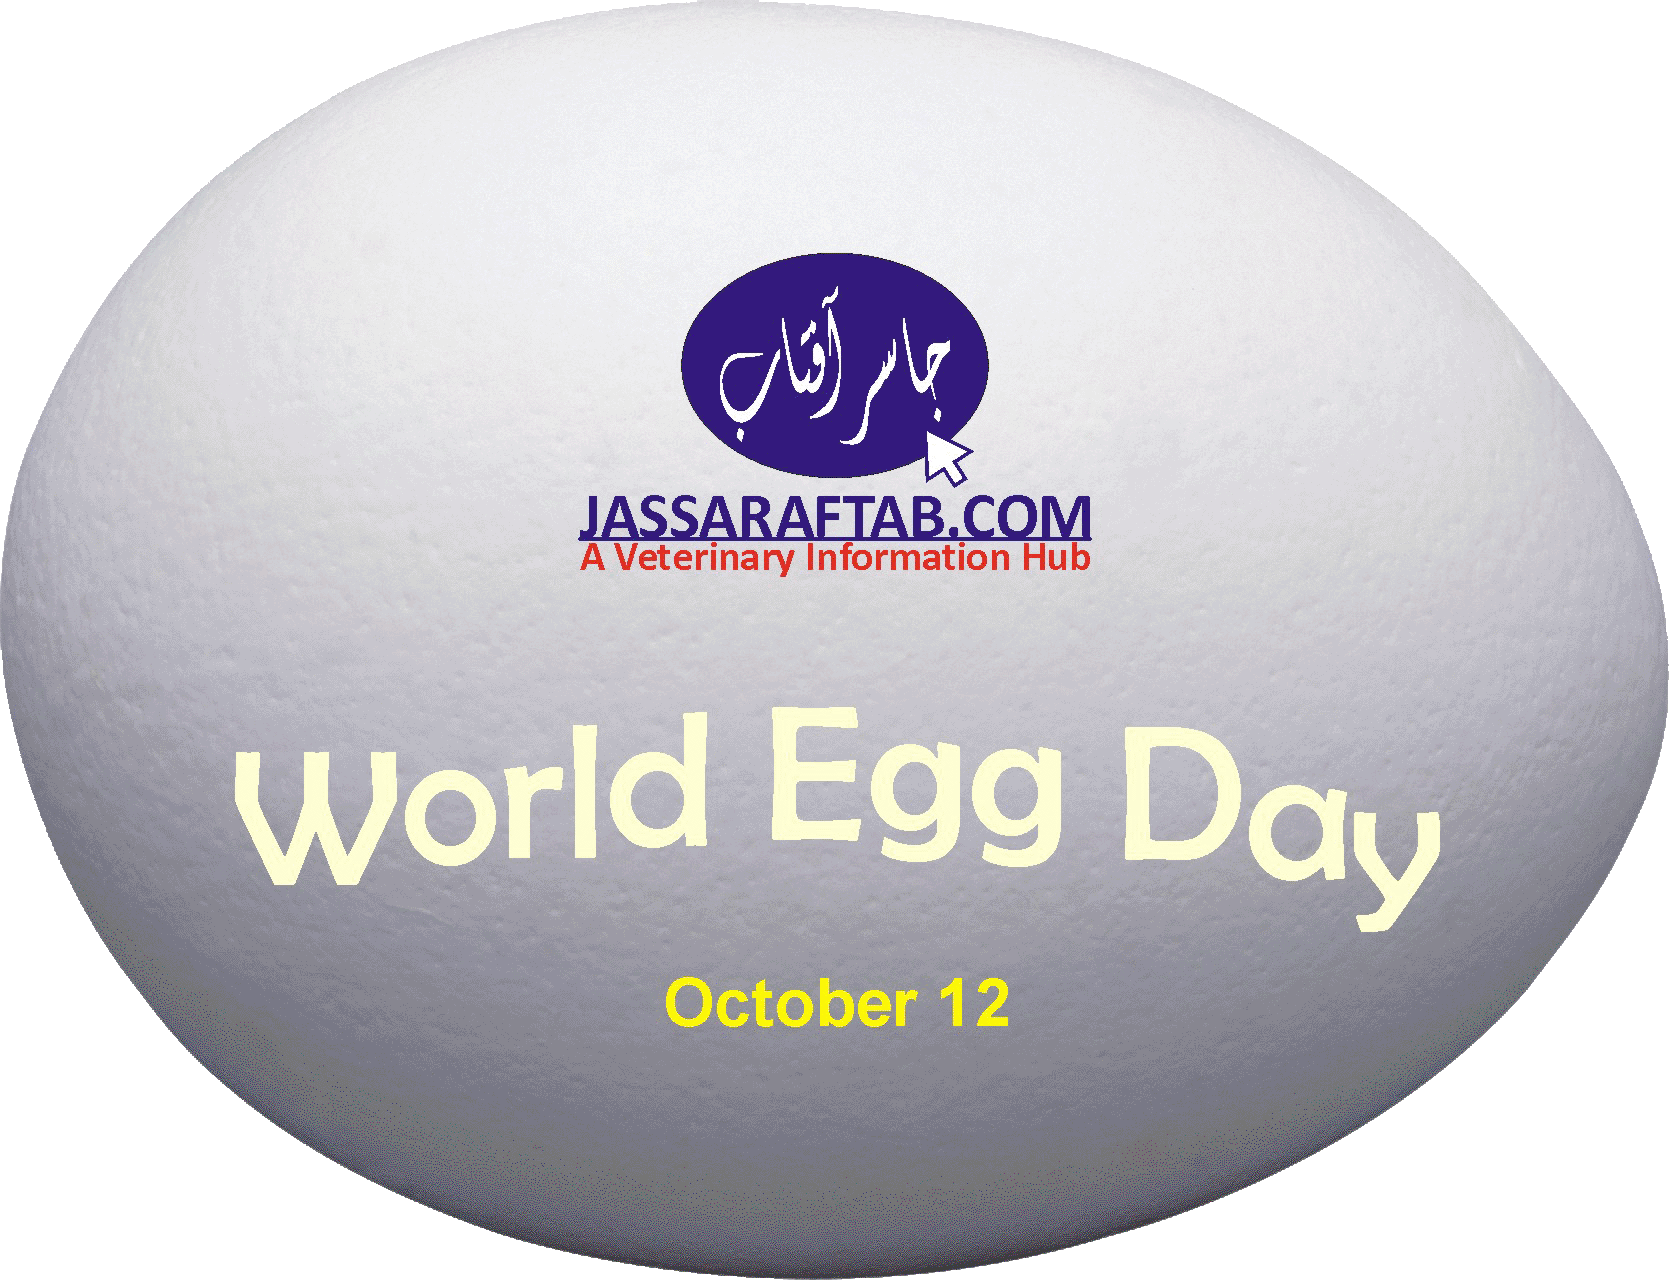 World Egg Day 2018